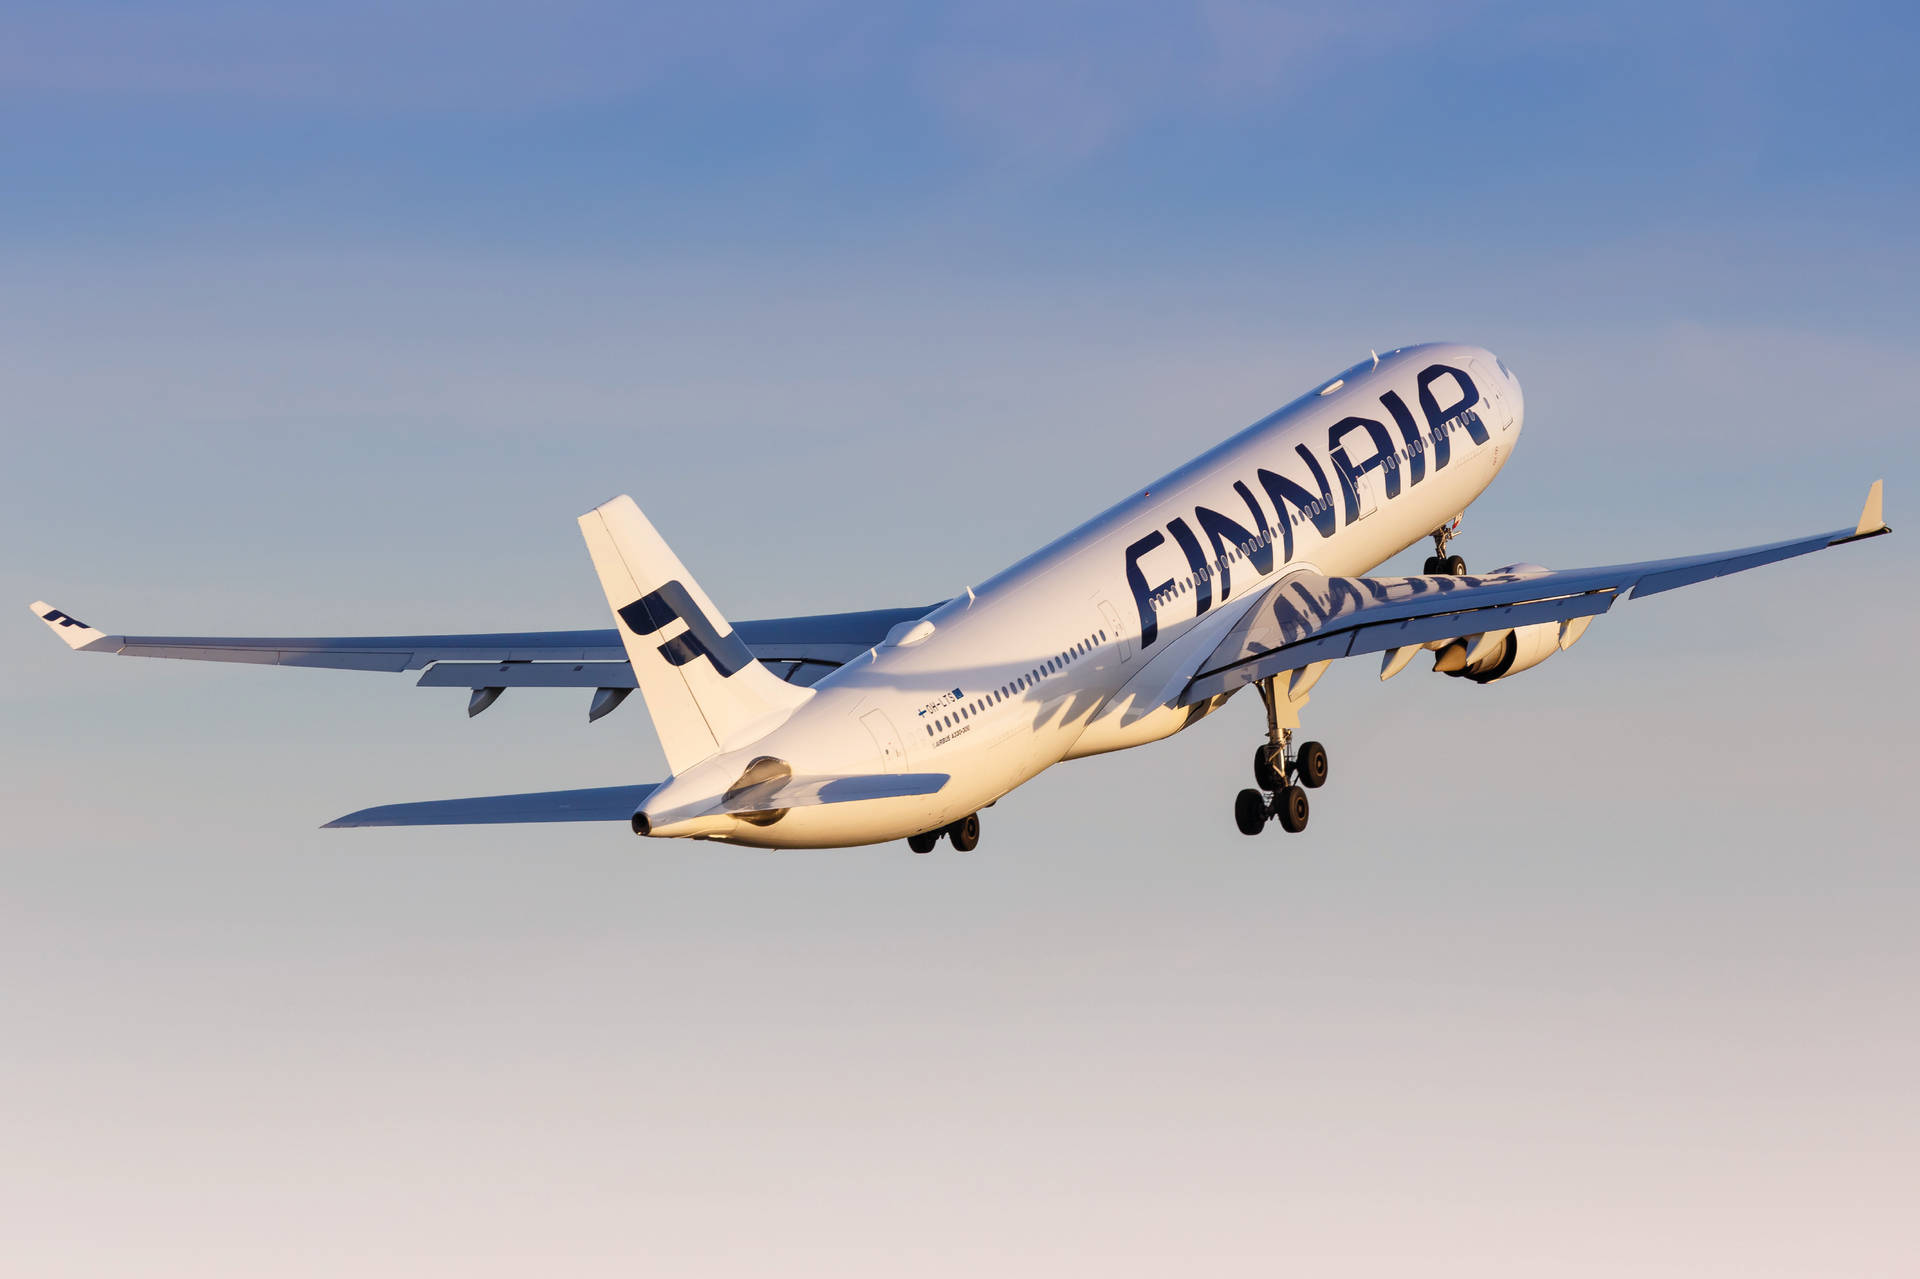 Finnair 4167 X 2775 Wallpaper